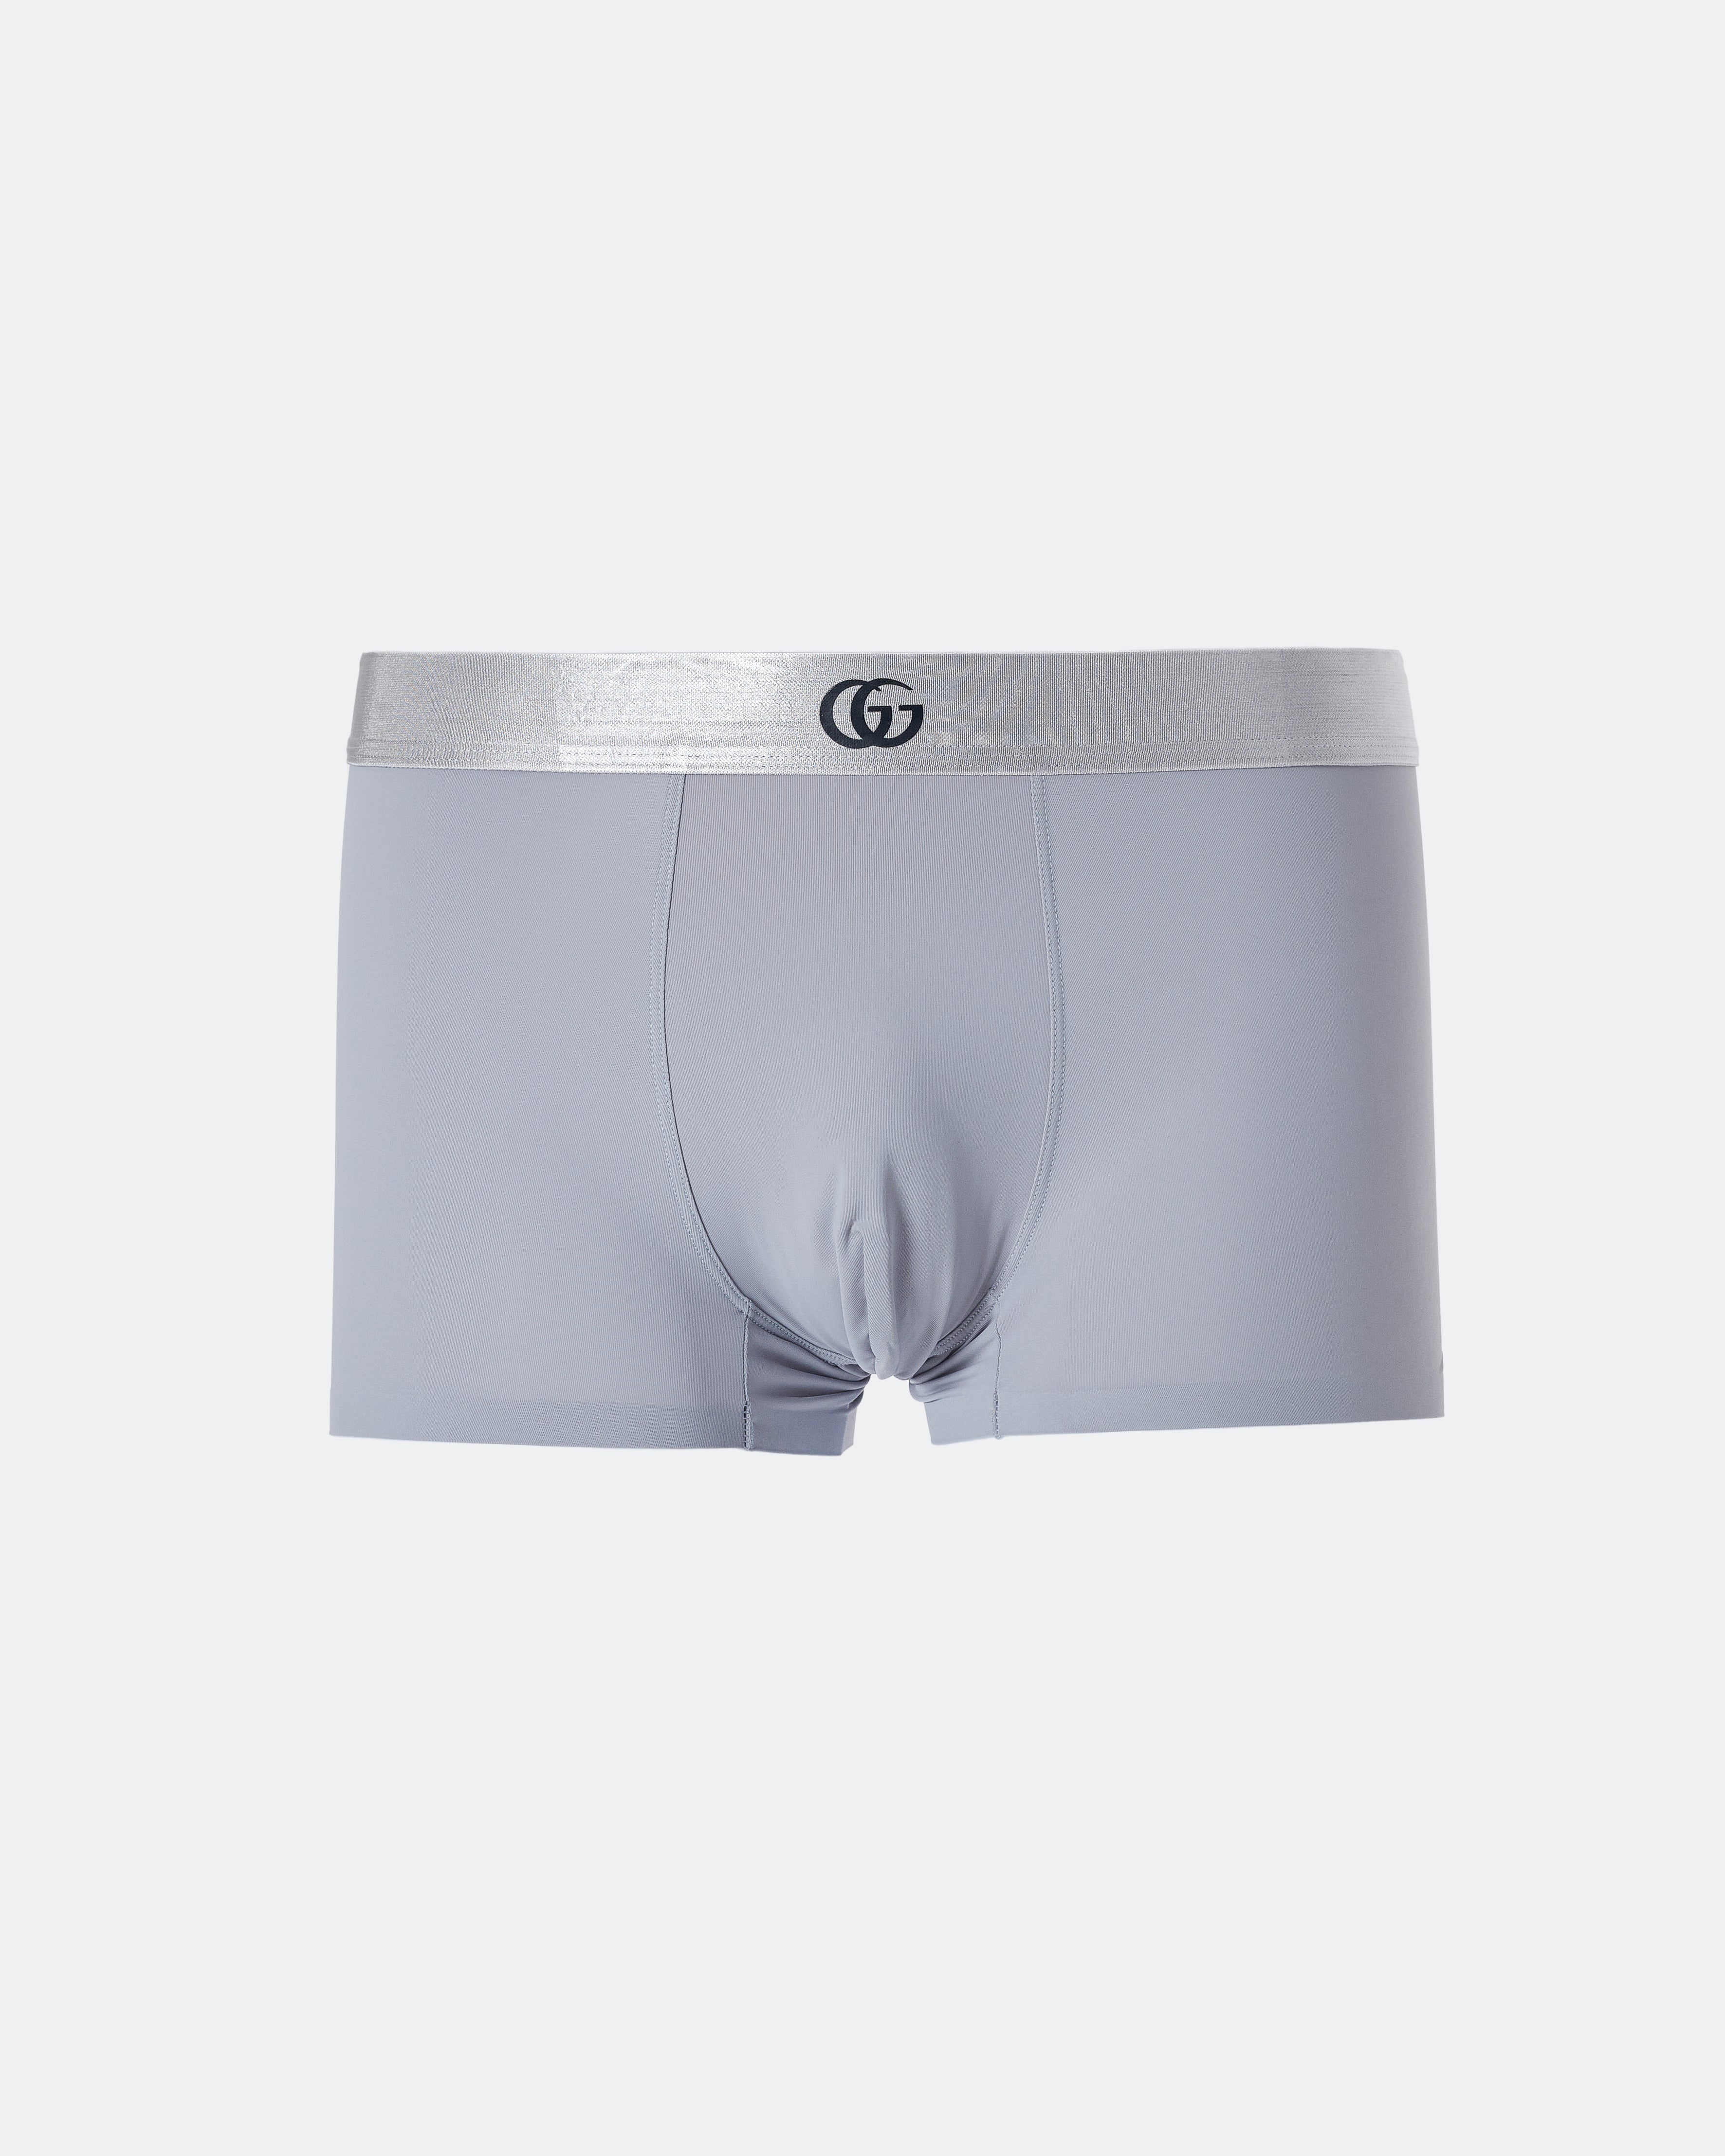 Logo Waistband Printed Men Underwear 6.90